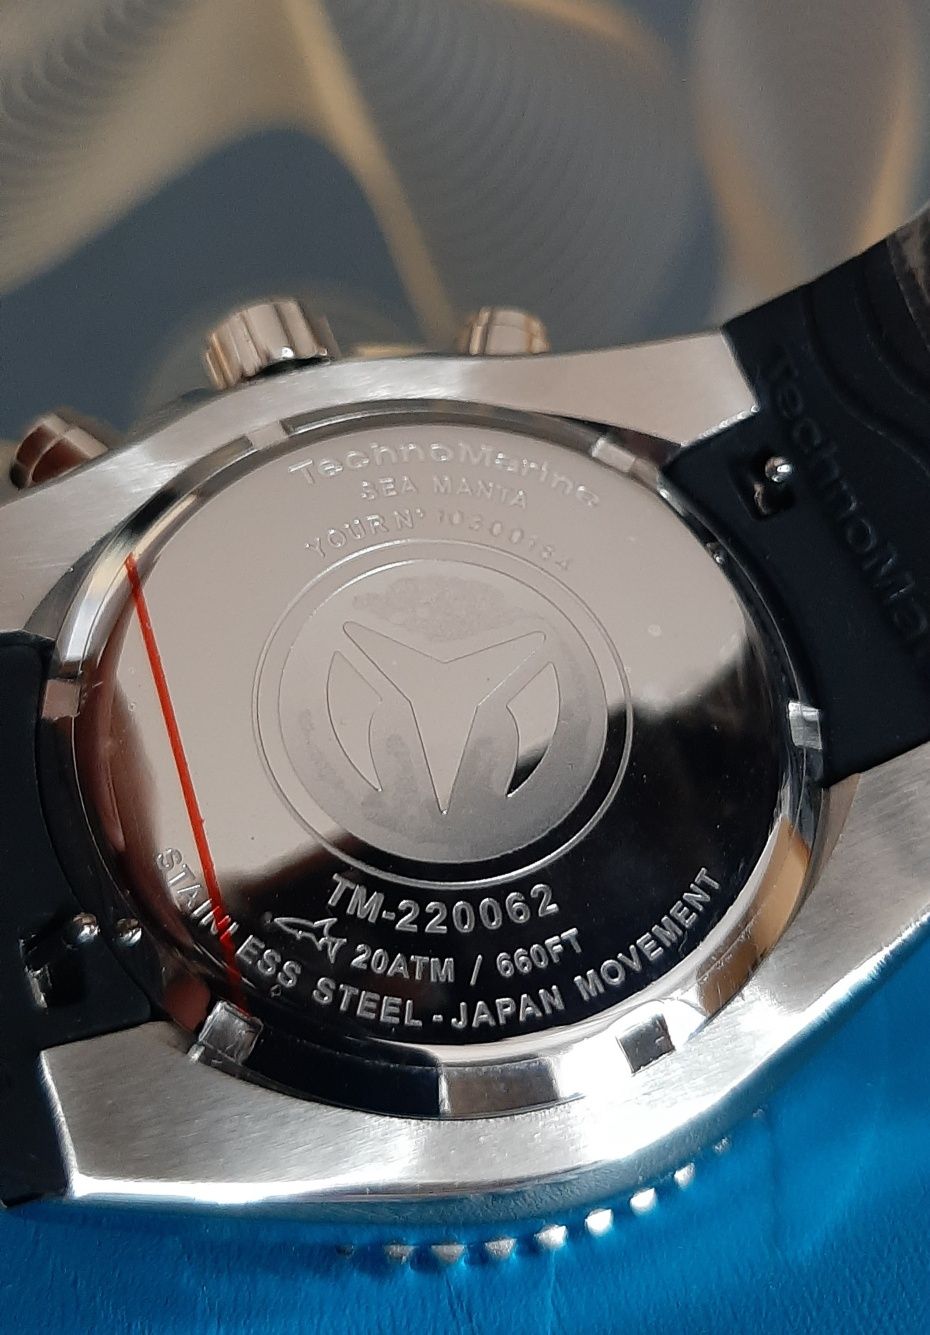 Оригинал! Часы мужские Technomarine  bogner 200 m подарок мужчине